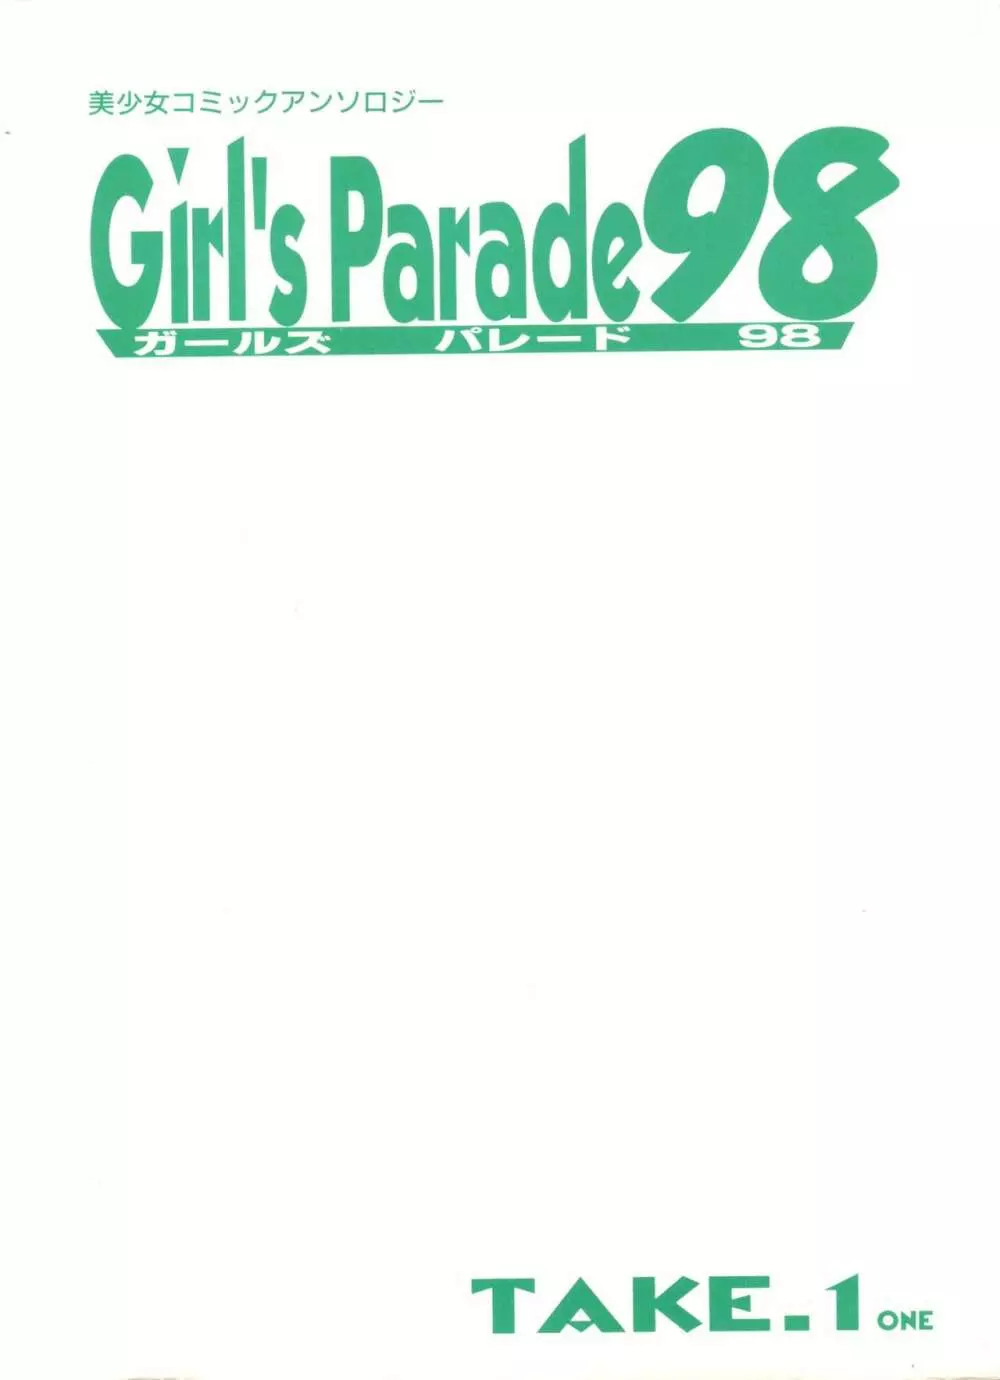 ガールズパレード’98 テイク1 4ページ